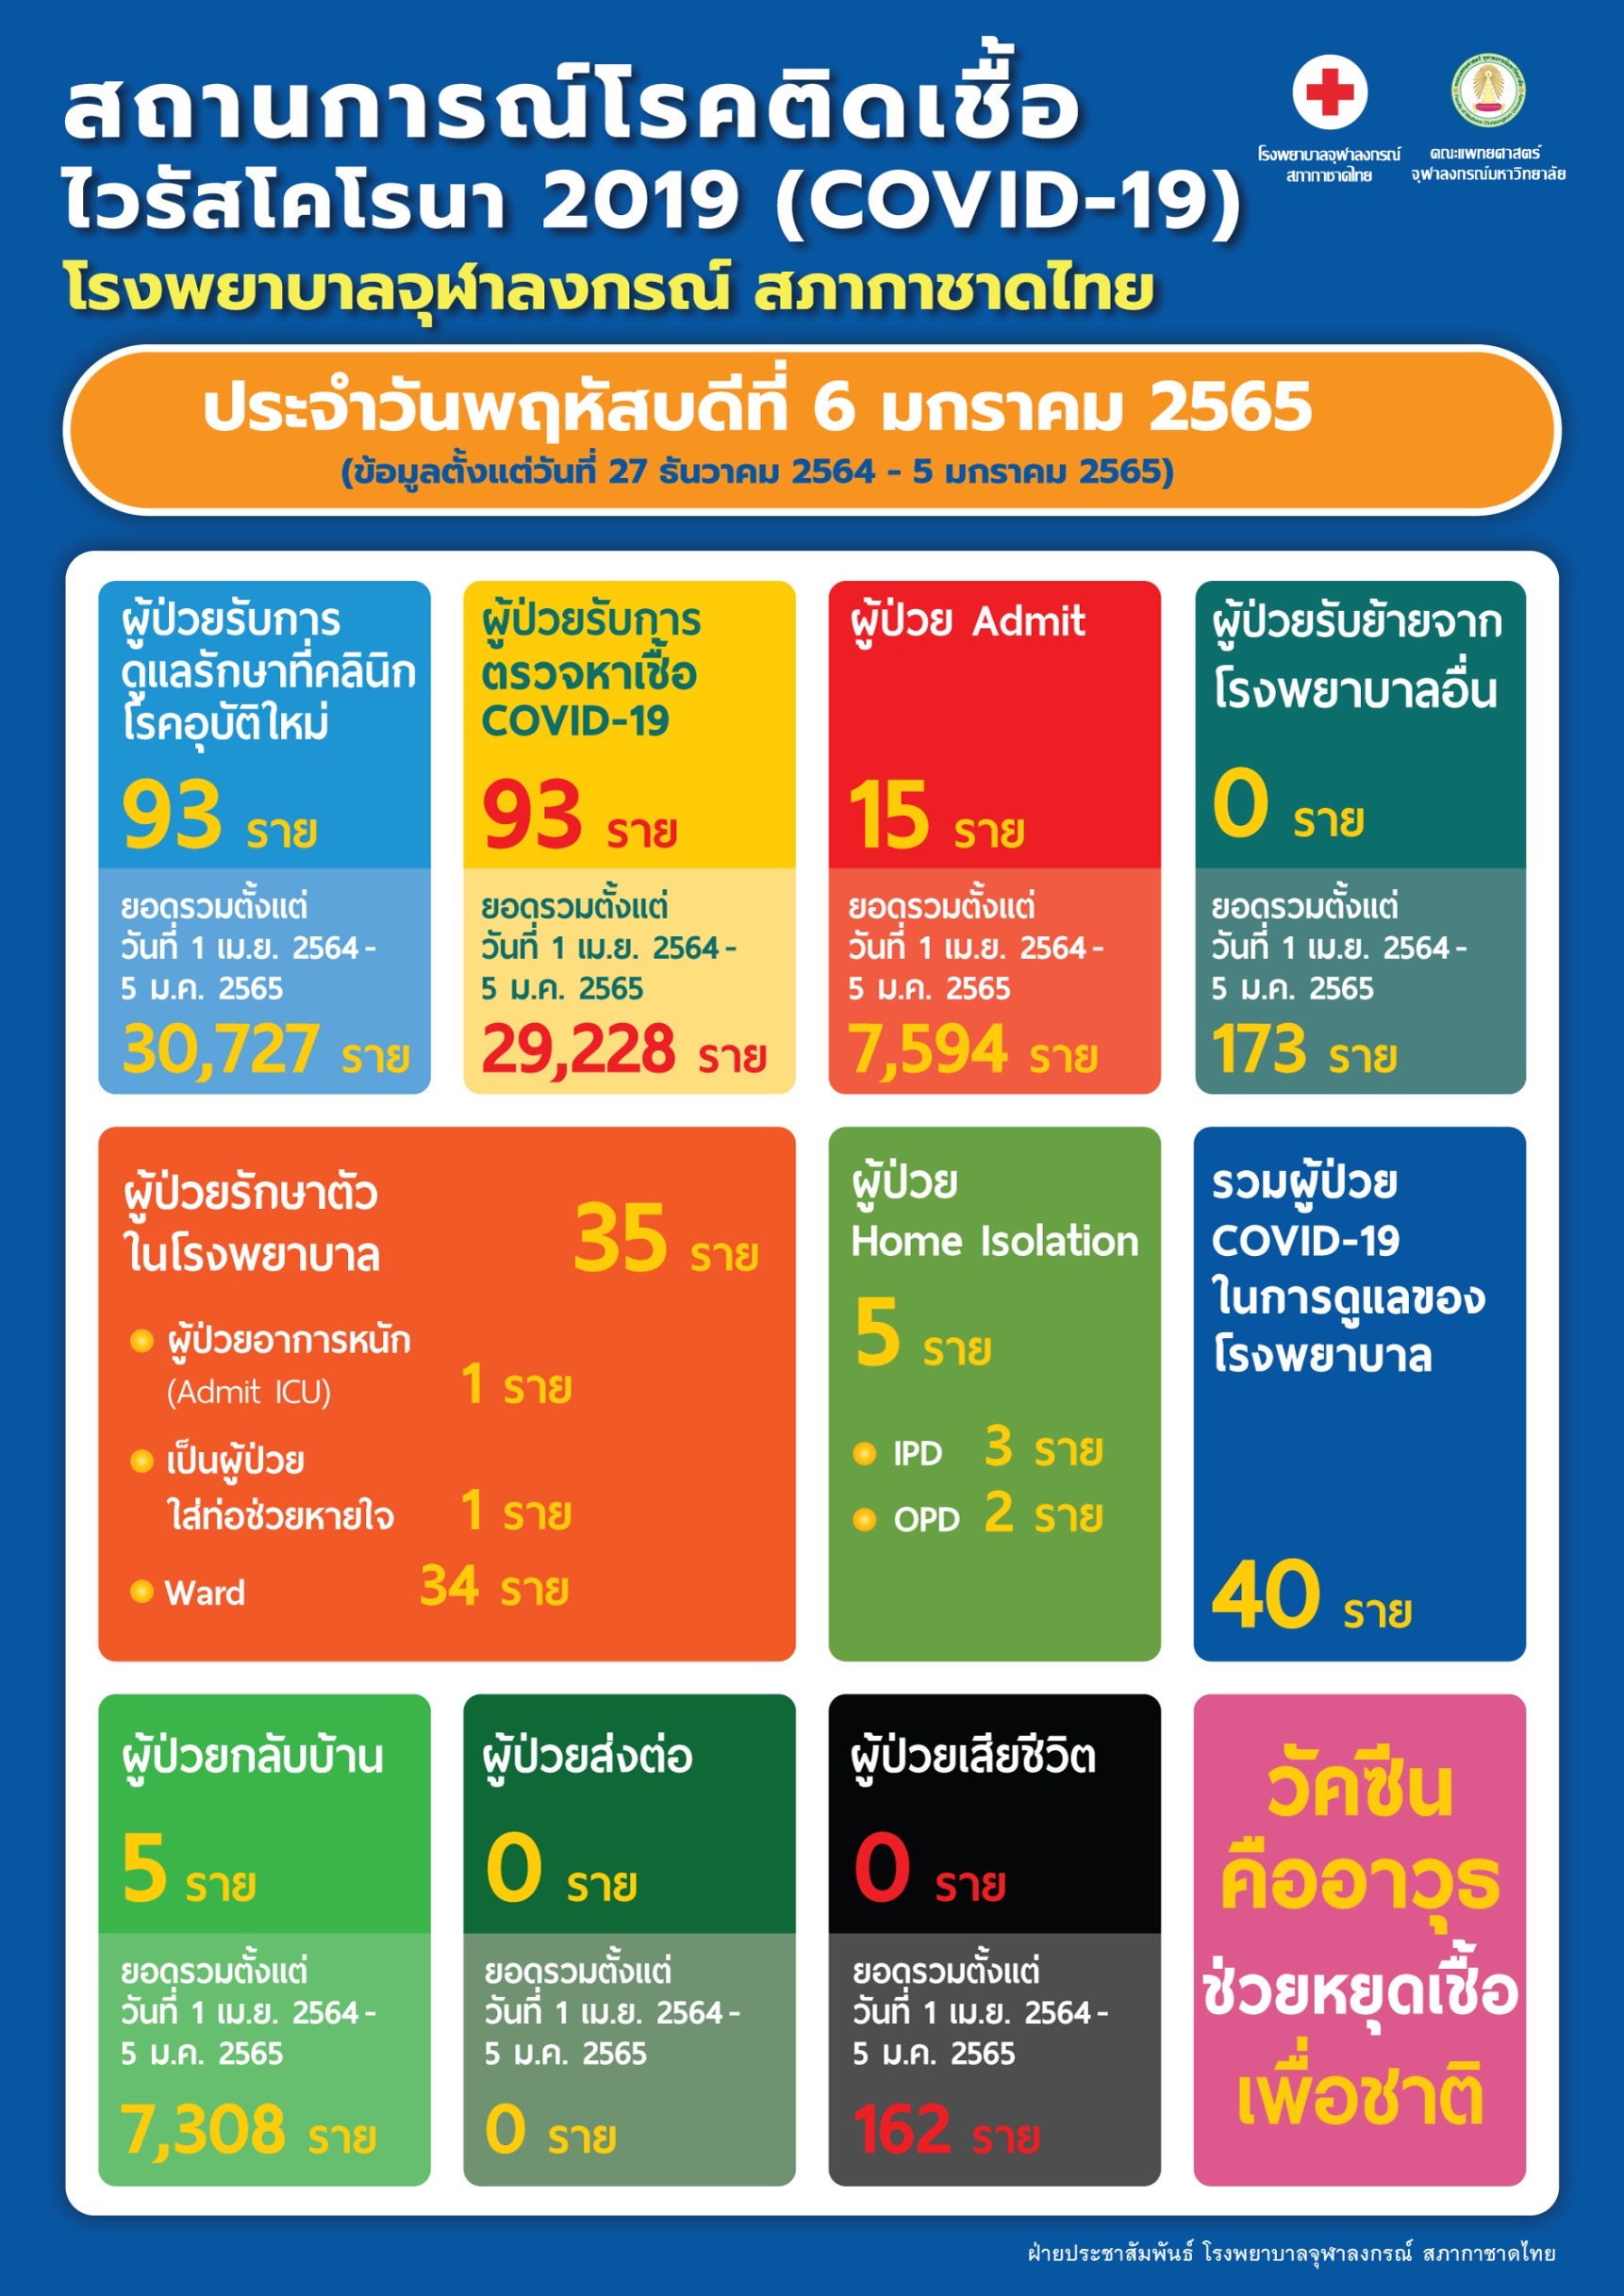 สถานการณ์โรคติดเชื้อ ไวรัสโคโรนา 2019 (COVID-19) โรงพยาบาลจุฬาลงกรณ์ สภากาชาดไทย ประจำวันพฤหัสบดีที่ 6 มกราคม 2565